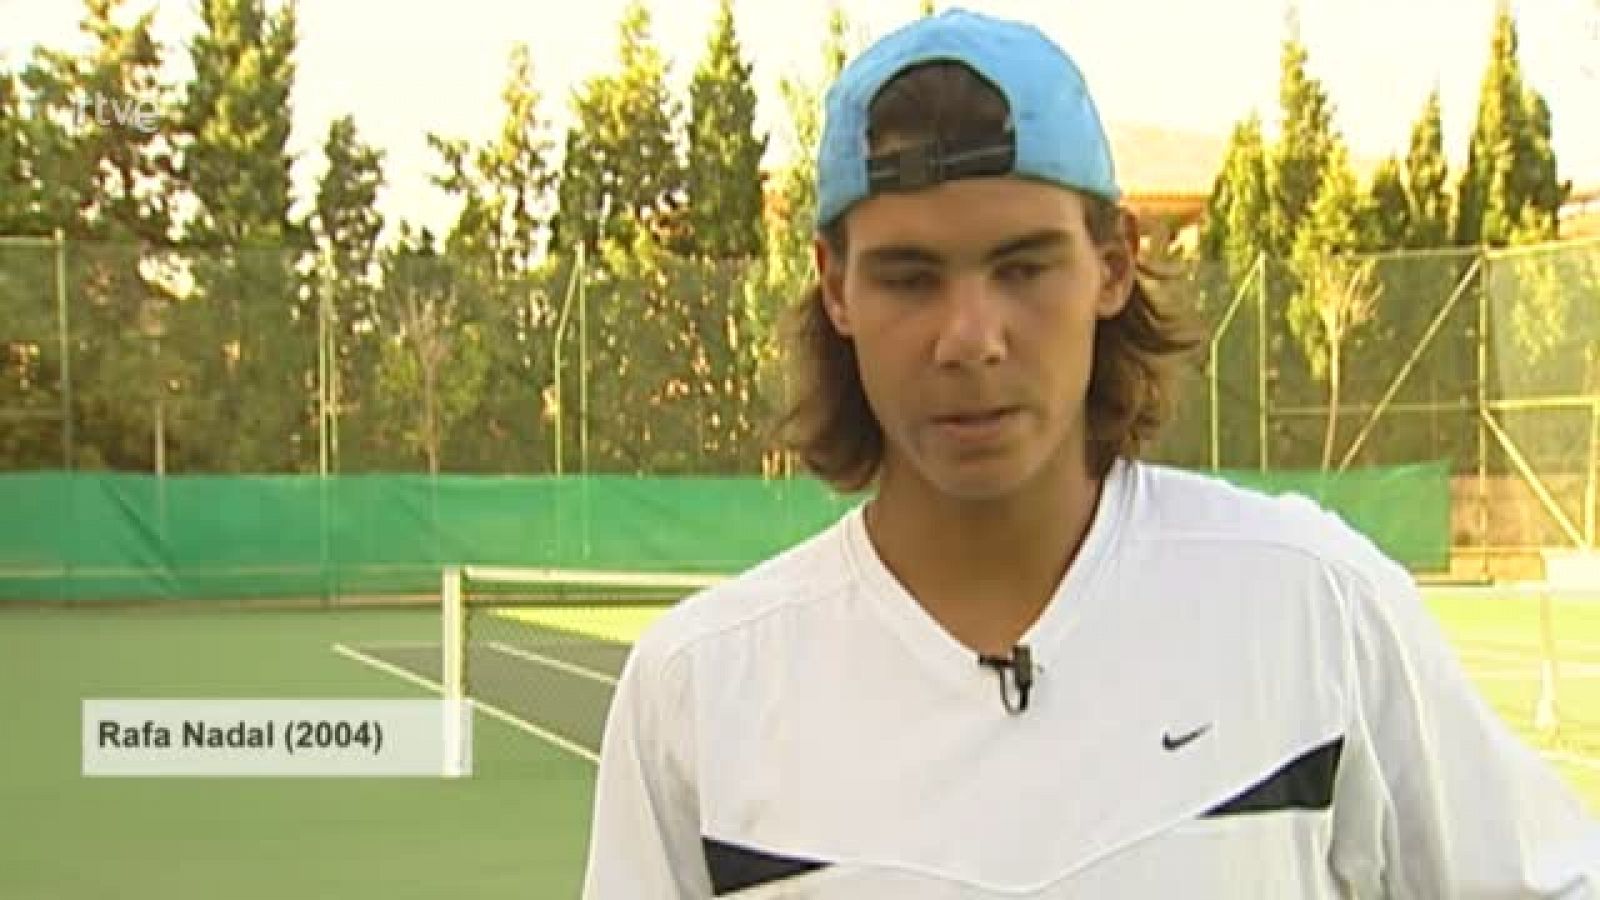 Rafa Nadal, tras ganar en Montecarlo en 2004: "Es una victoria muy importante para mí"